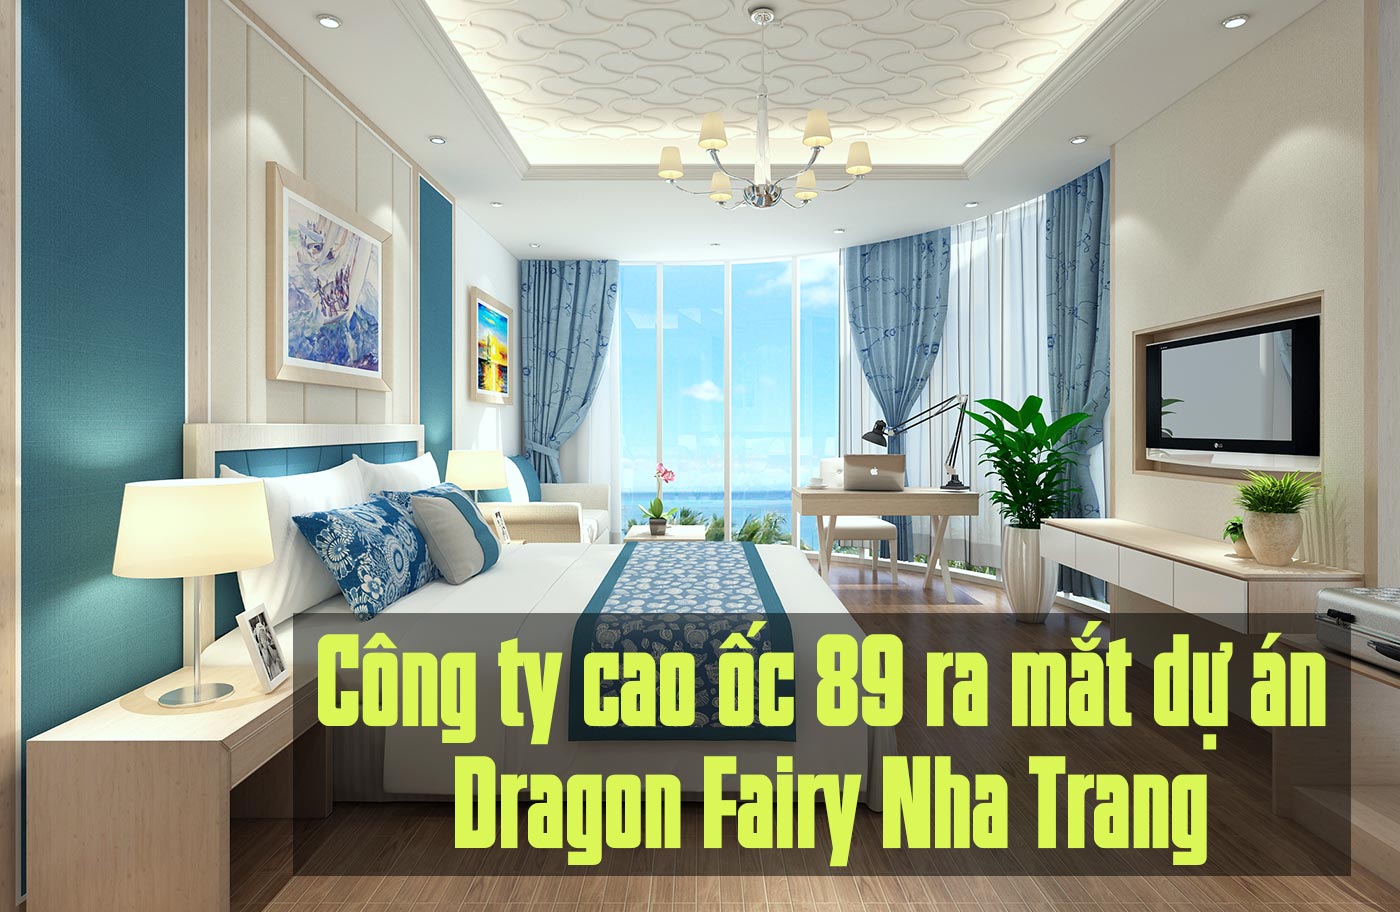 Công ty cao ốc 89 ra mắt dự án Dragon Fairy Nha Trang